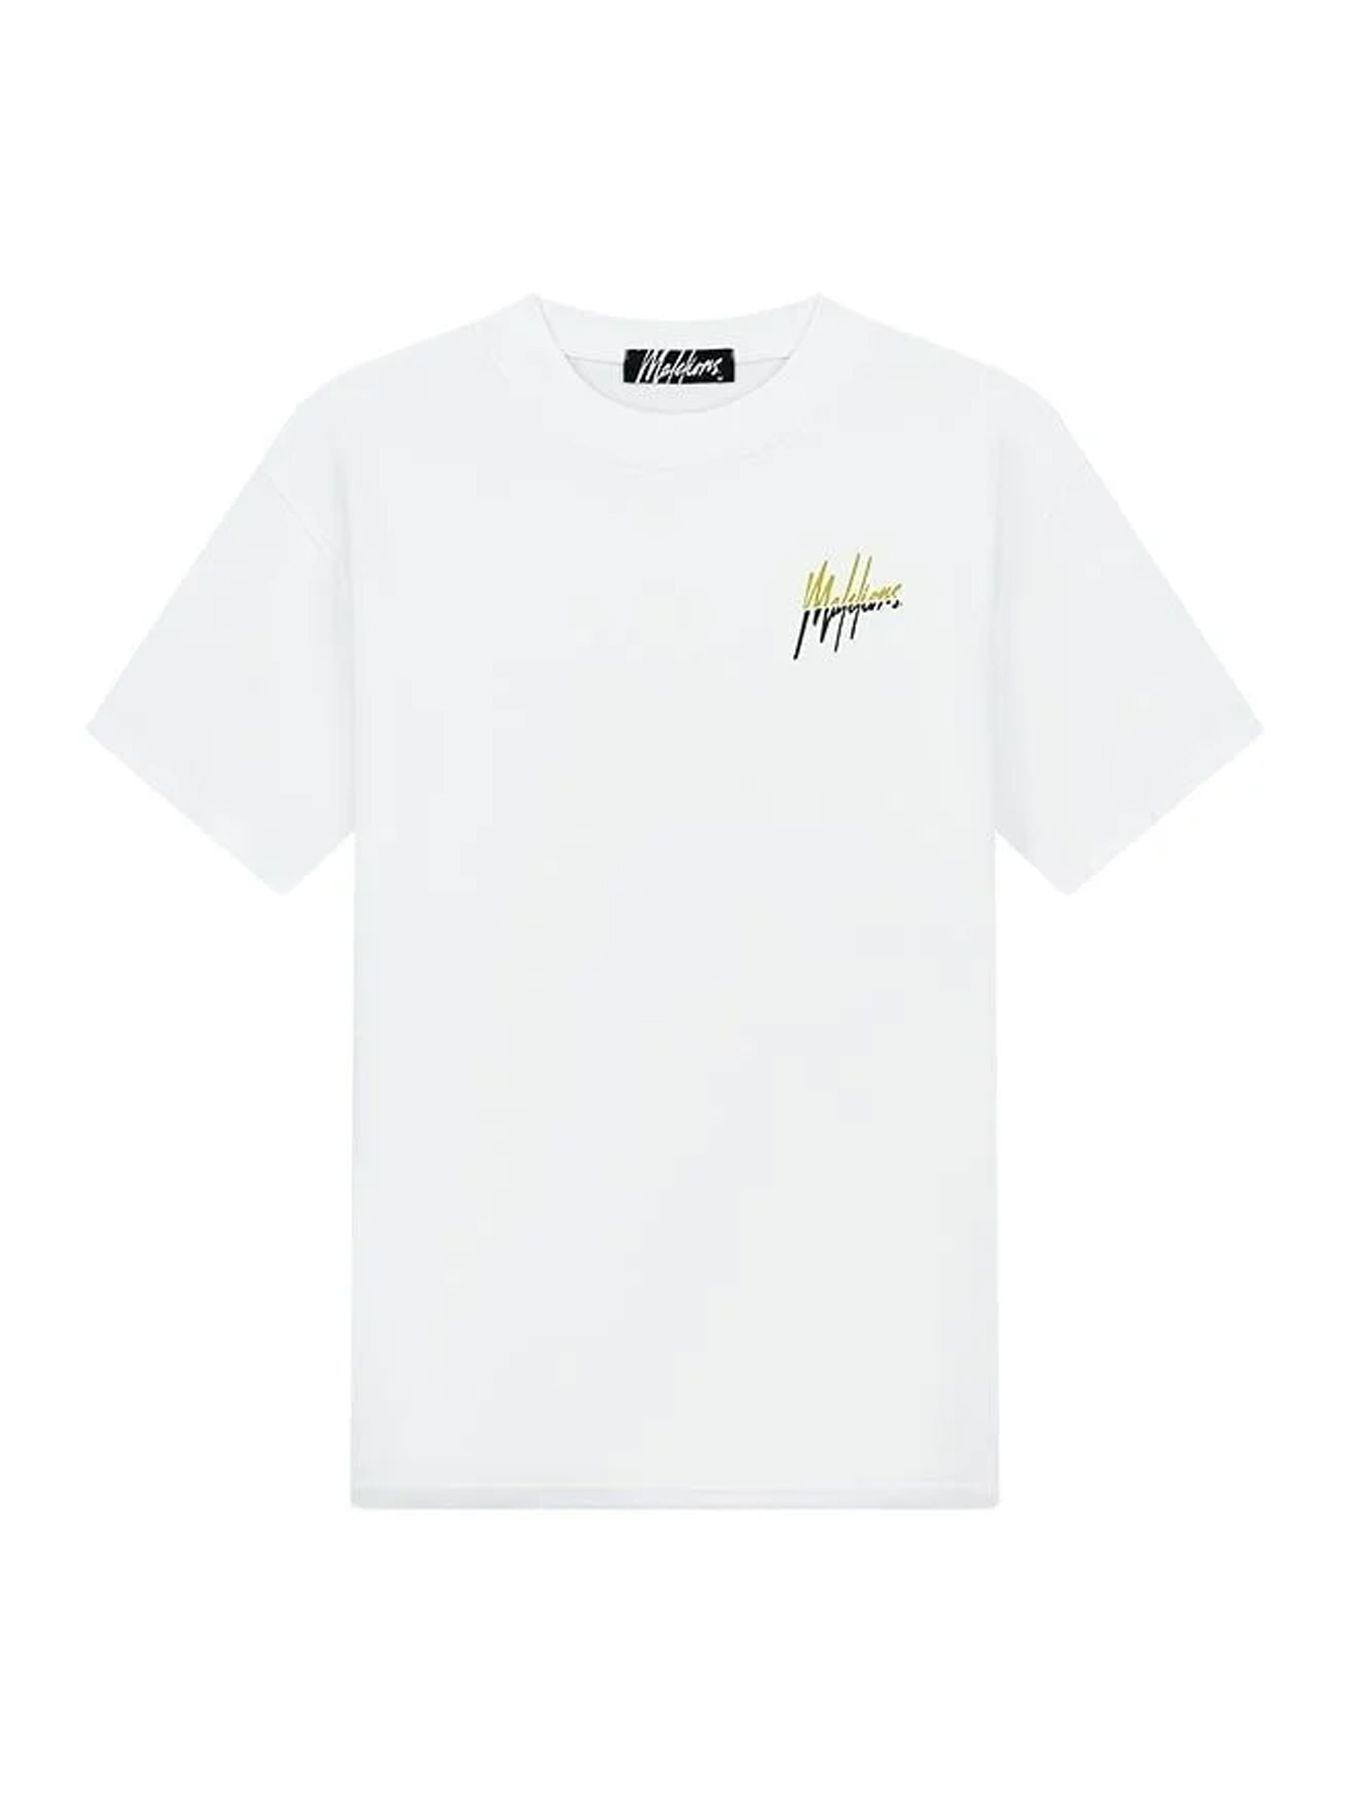 Malelions Men split T-shirt White/Golden Lime 00109023-833